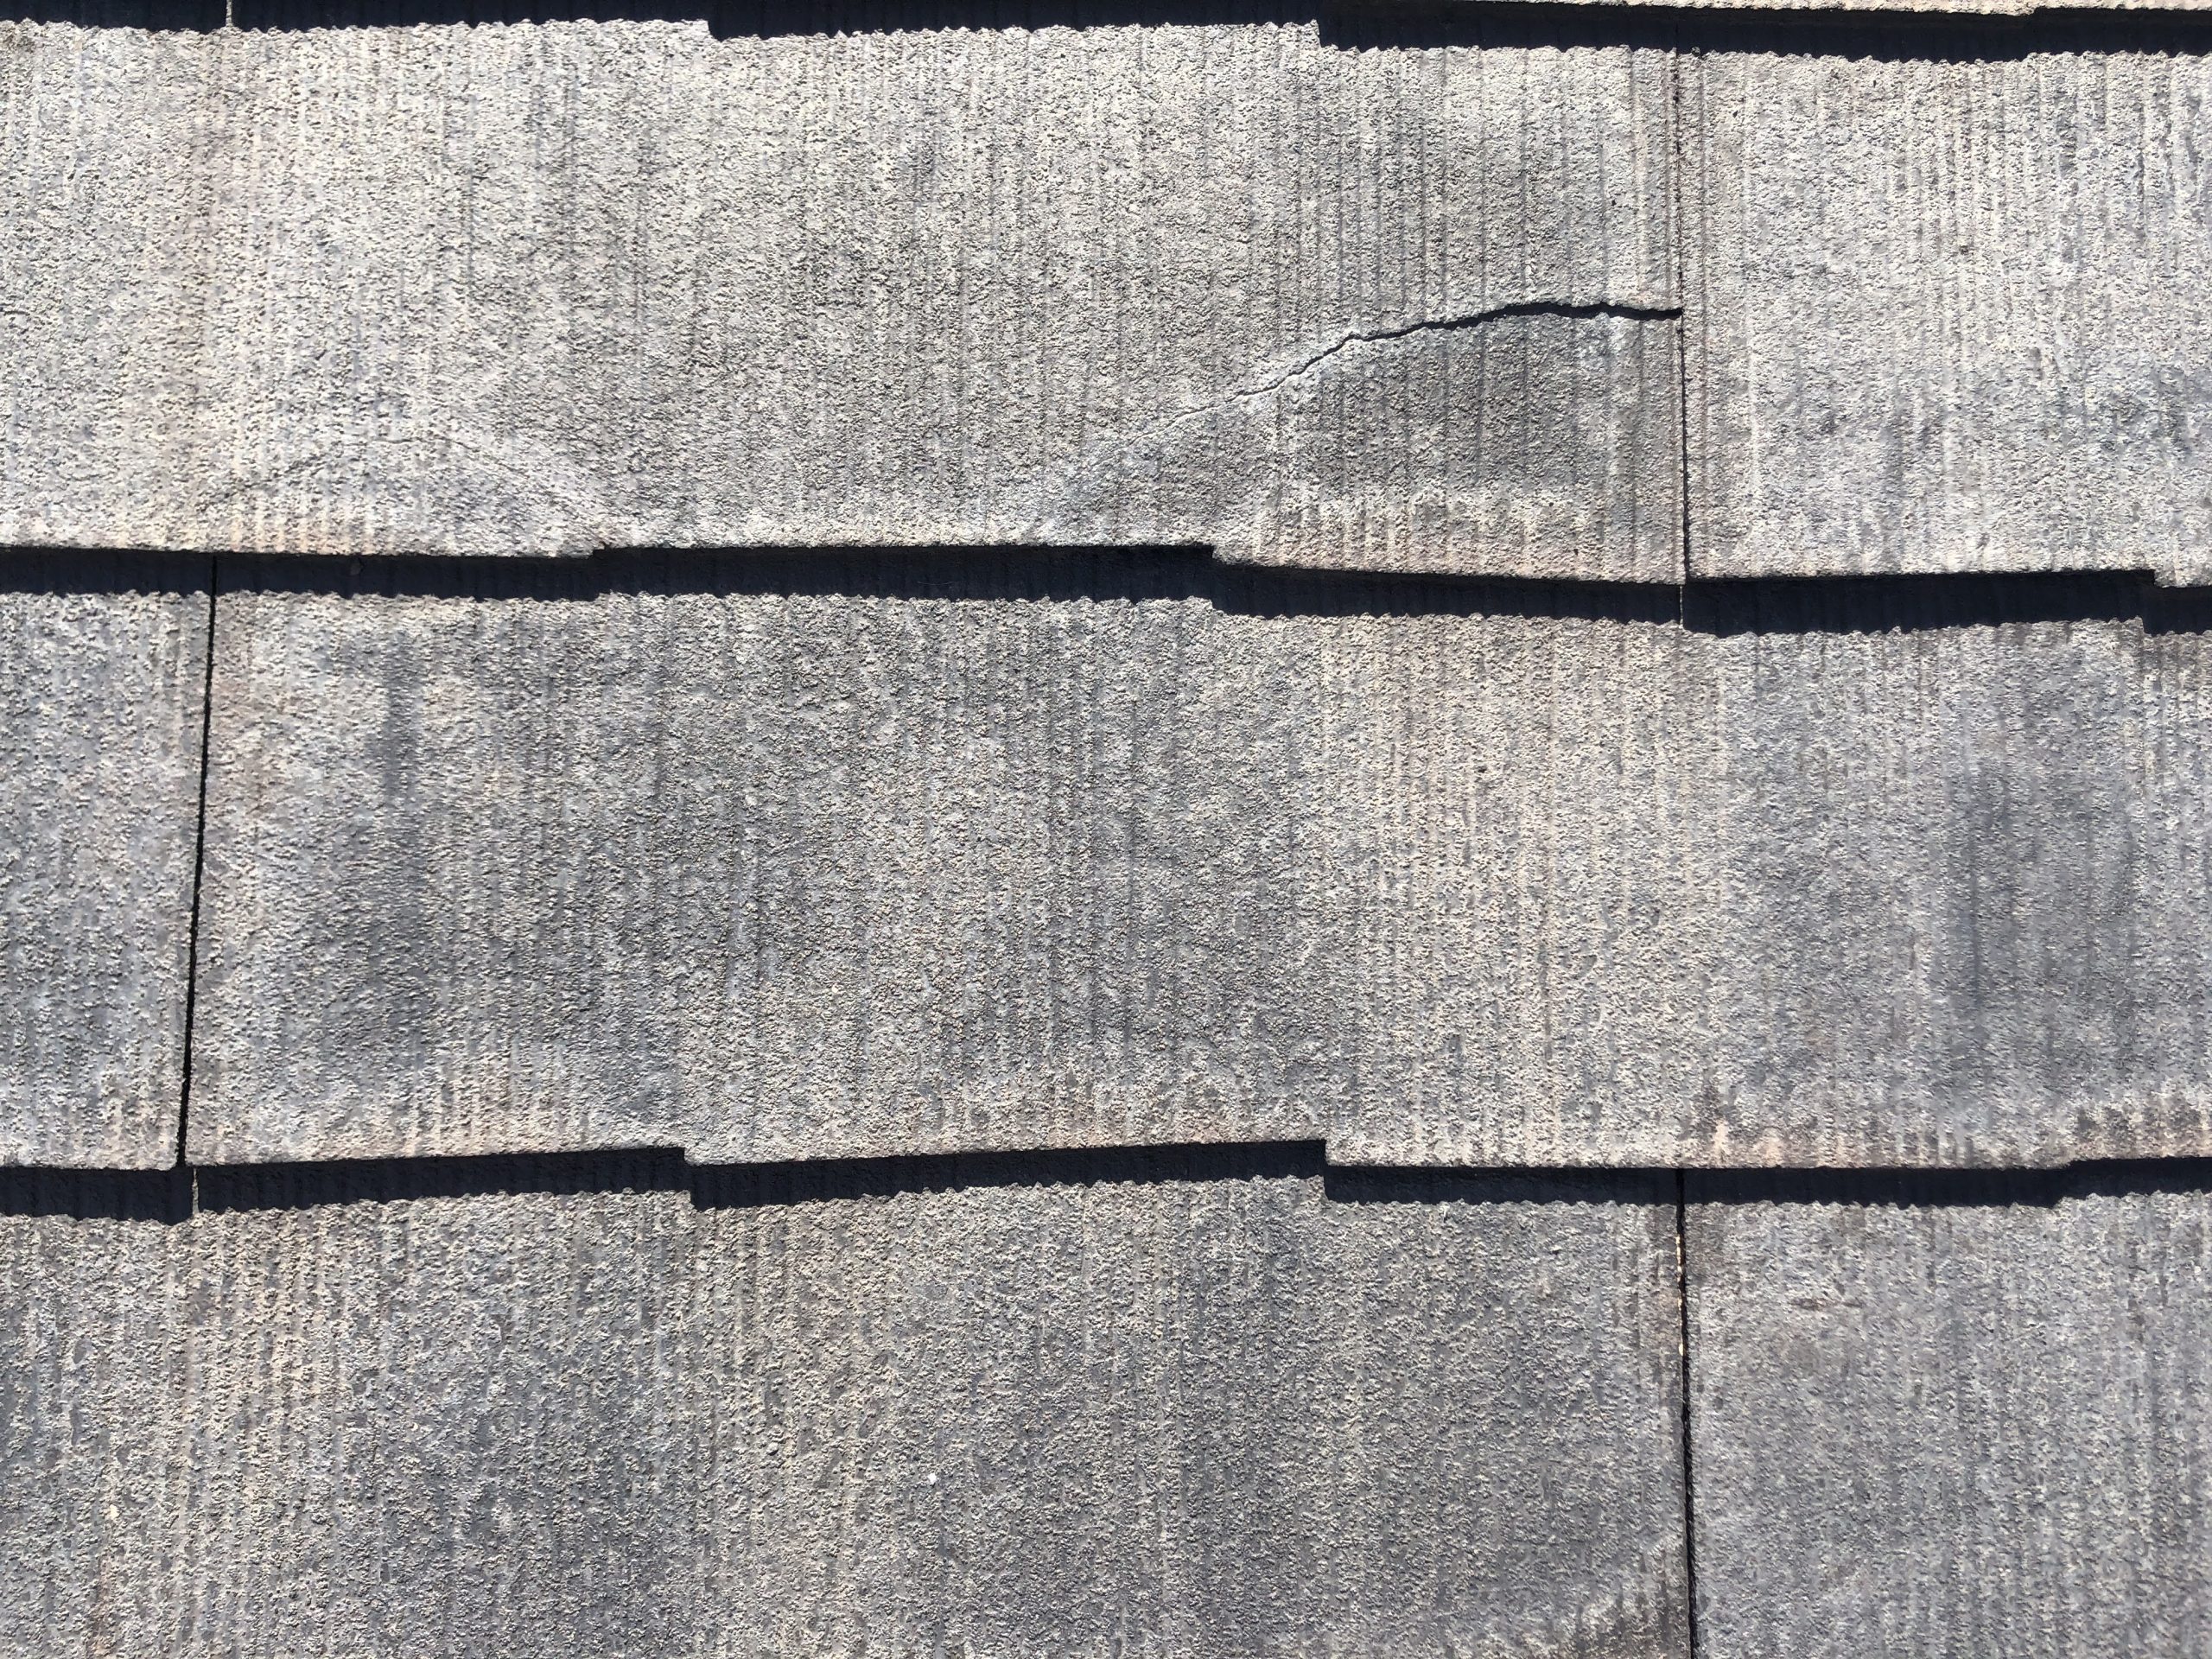 【着工前】
スレート屋根は、屋根材の一枚一枚が薄く、ほかの屋根材と比べると劣化しやすいので、経年劣化によって割れる部分が出てきてしまうことがあります。